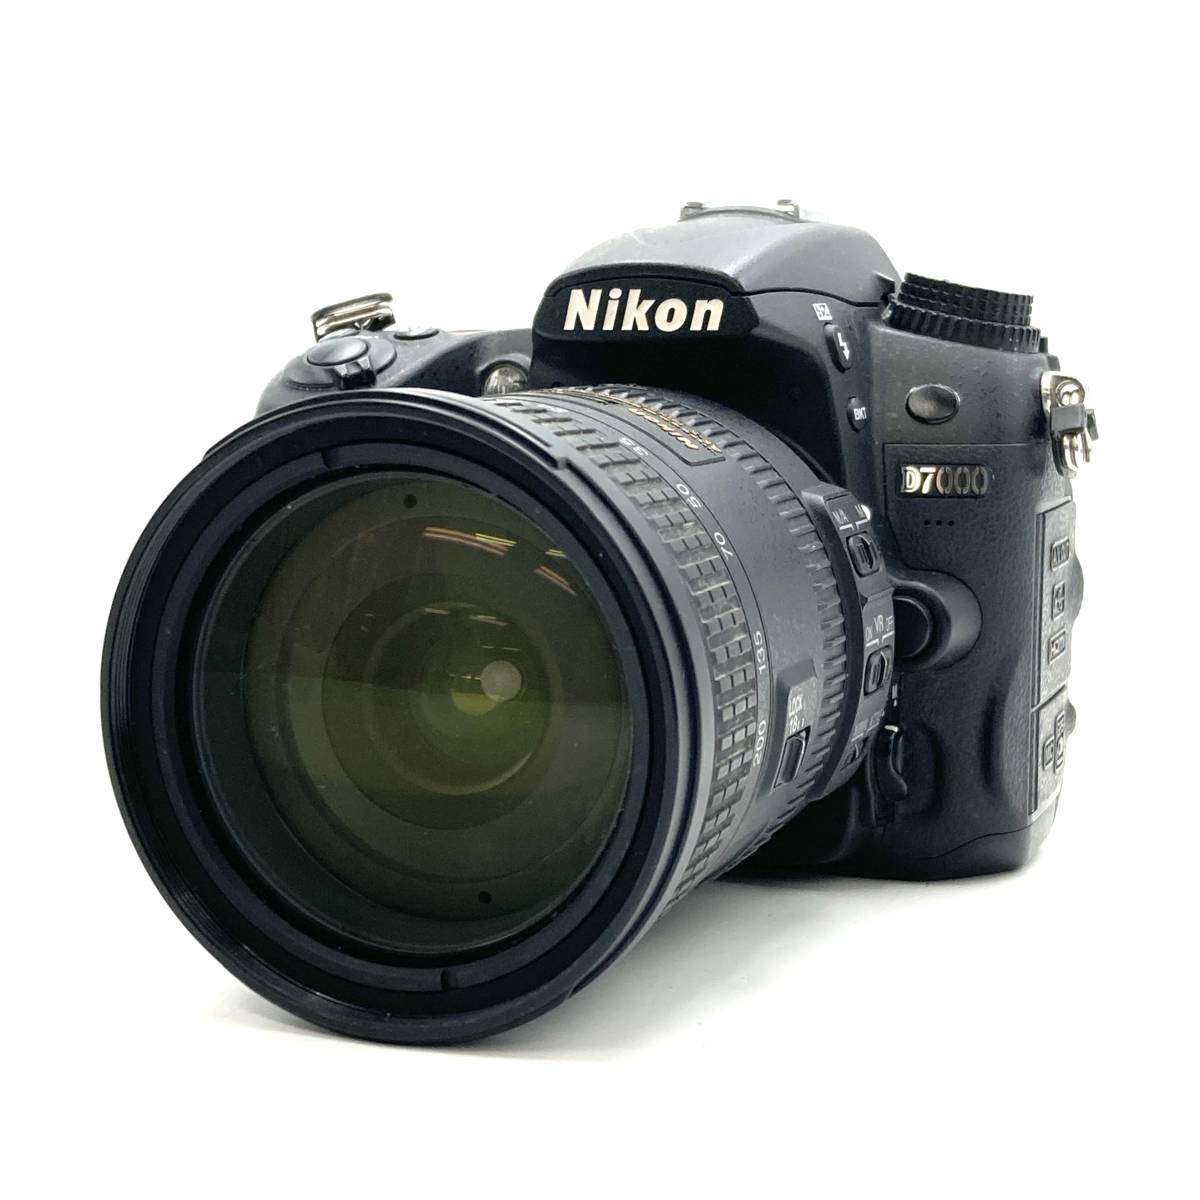 Yahoo!オークション - ジャンク『Nikon D7000 デジタル一眼レフカメラ/